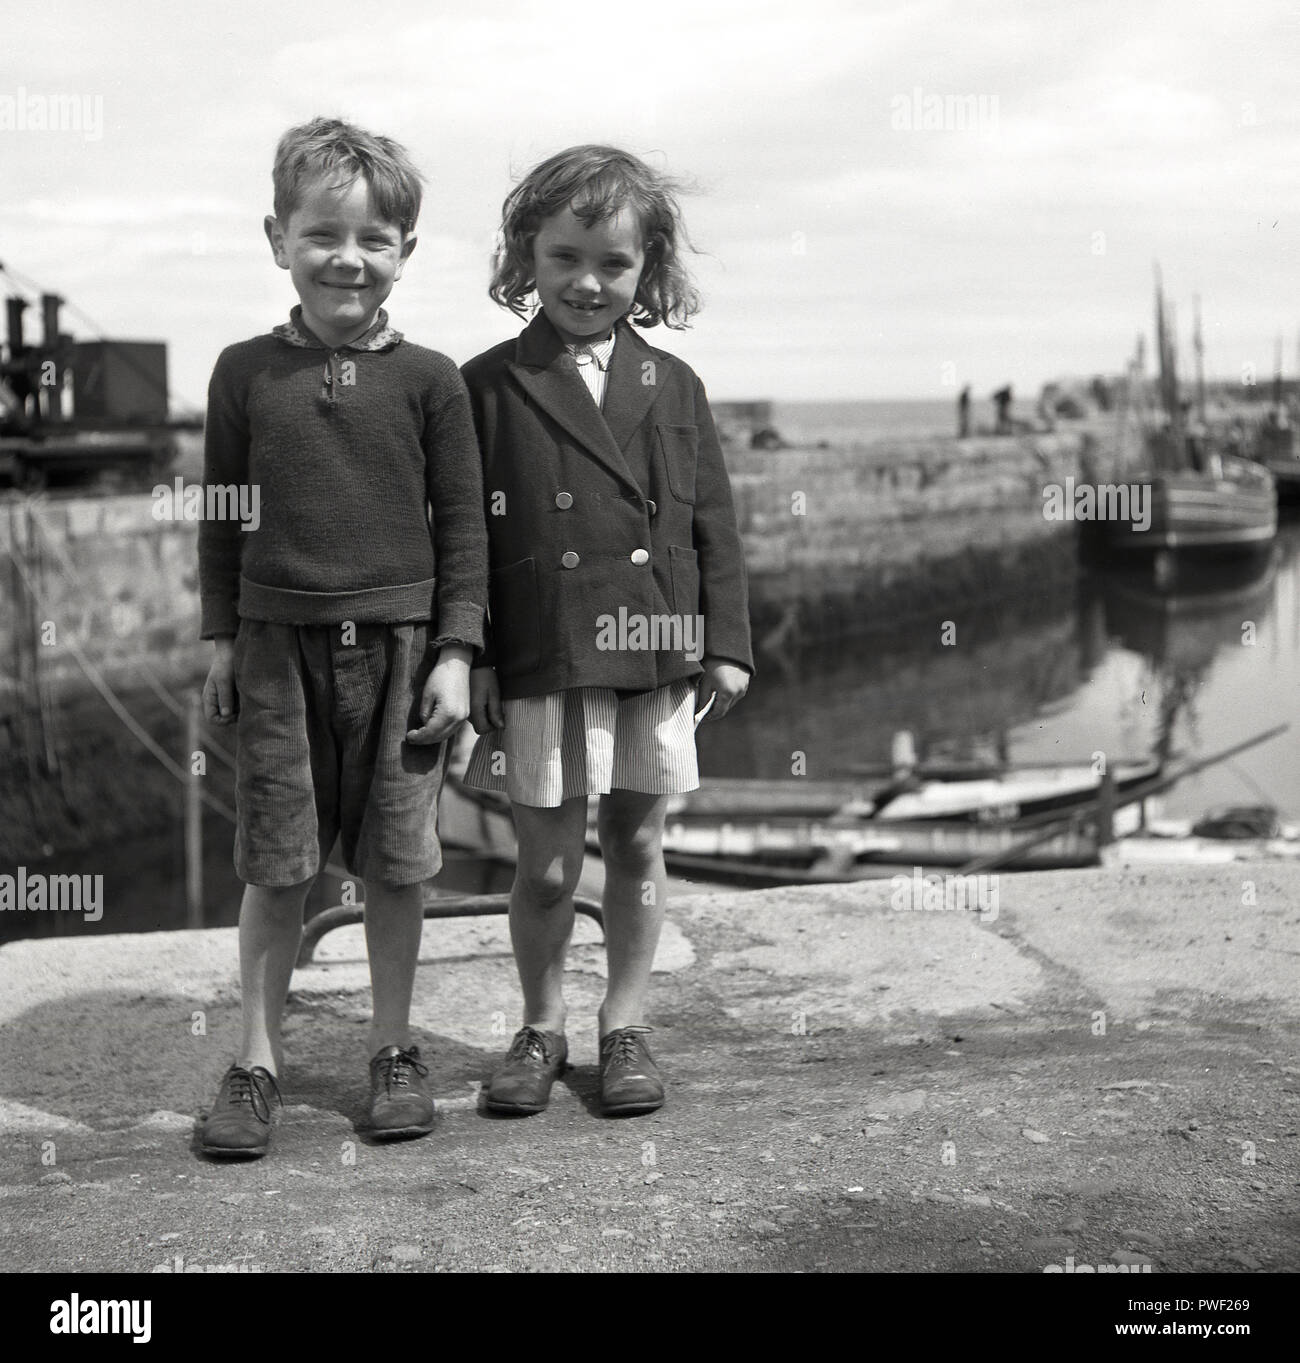 Années 1950, historique, par un petit port de pêche, un jeune garçon et fille irlandaise avec de grands sourires, se tenir ensemble pour une photo, l'Irlande du Nord, Royaume-Uni. Banque D'Images